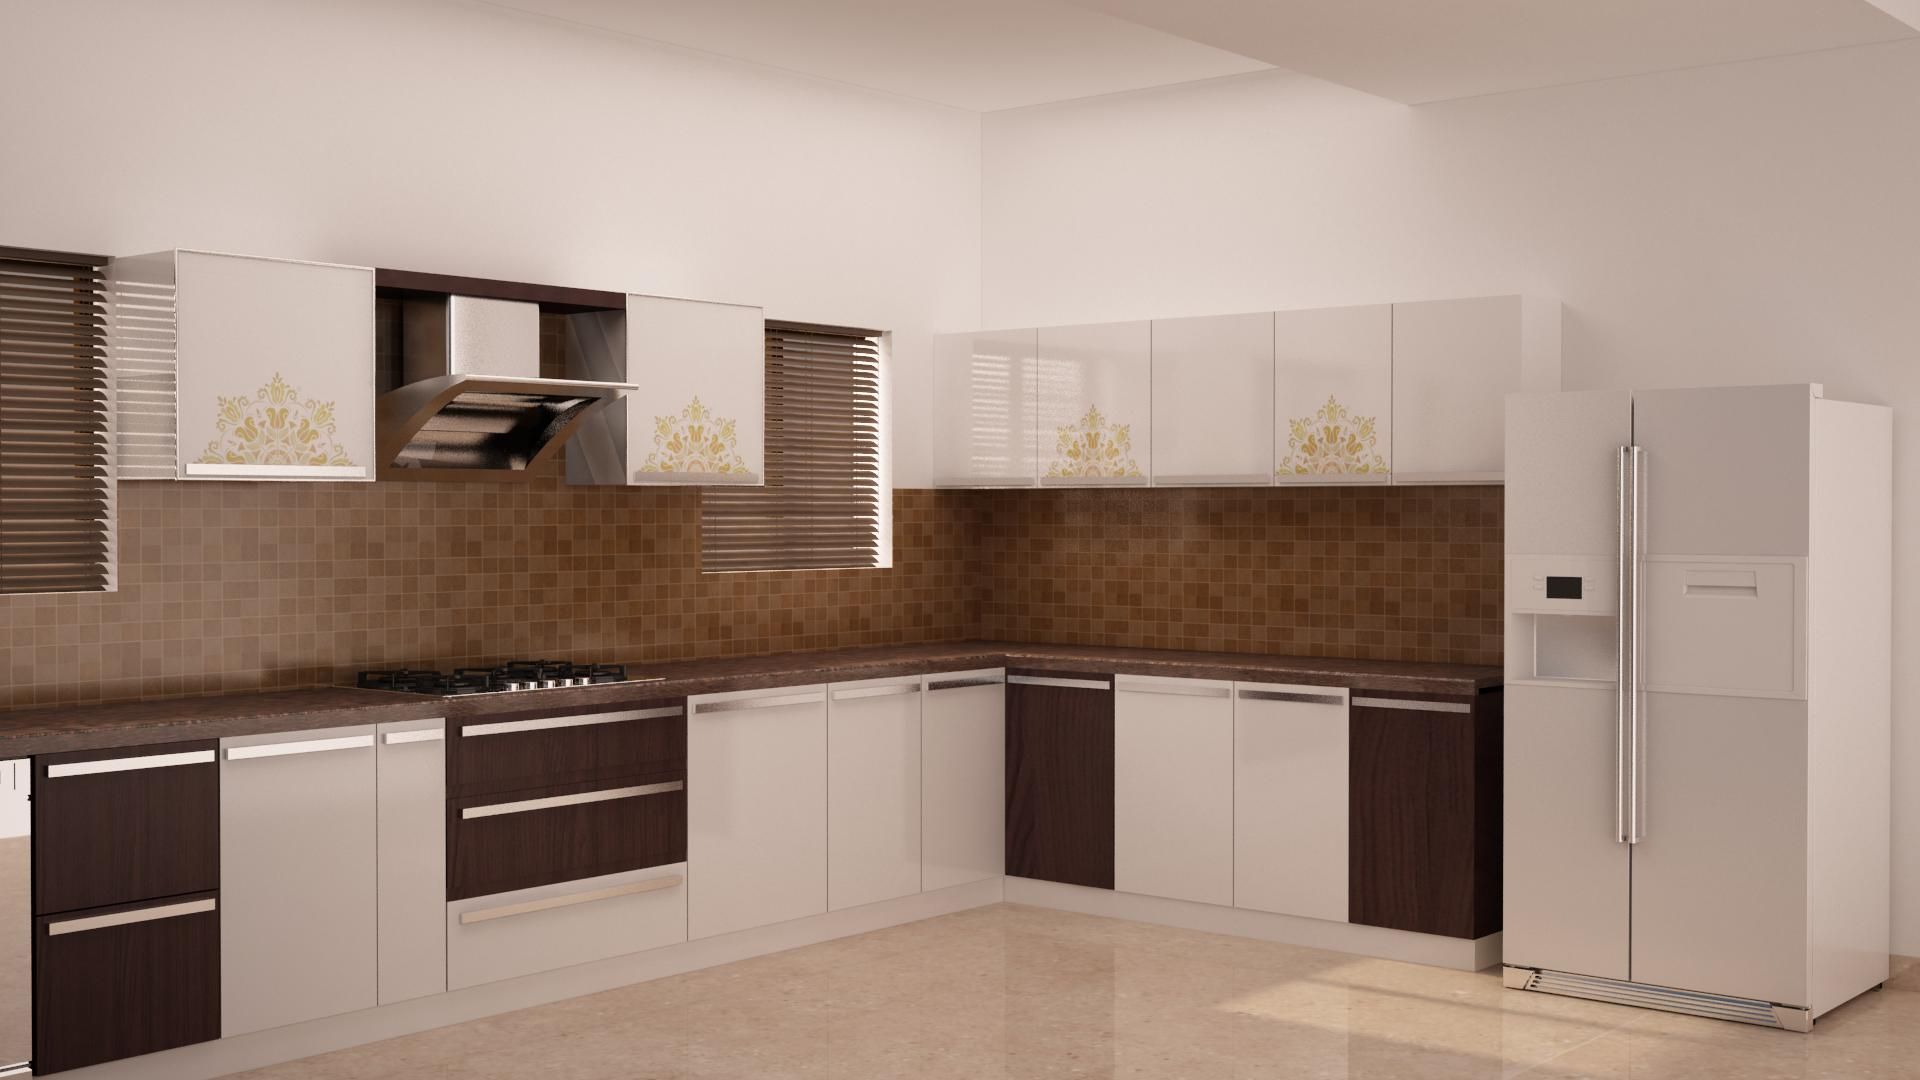 Simple kitchen design homify Kitchen